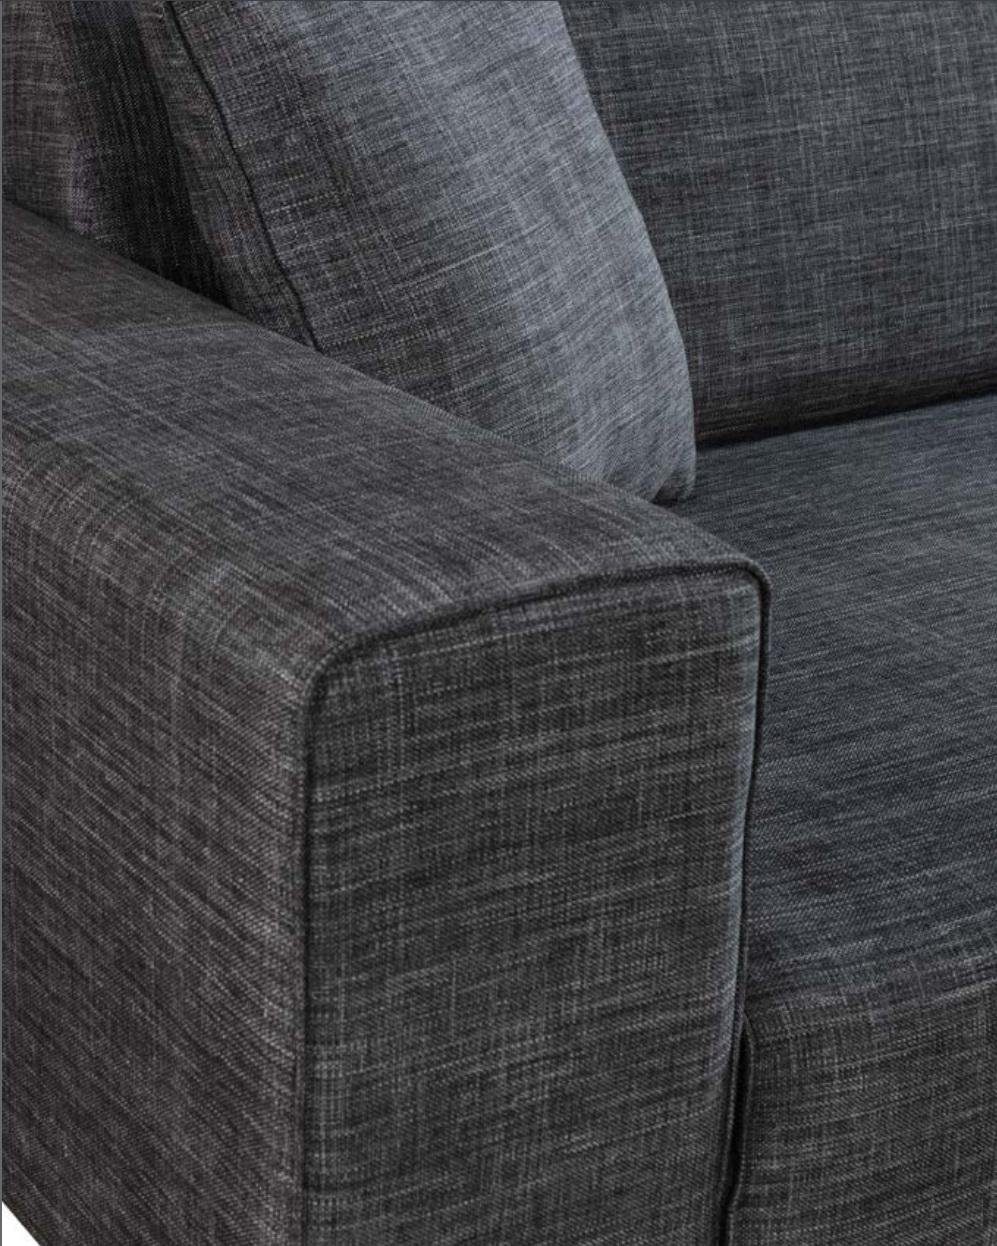 3 Textil Schwarz Couch Dreisitzer Sofa, JVmoebel Sitzer Sofas Sofa Möbel Polster